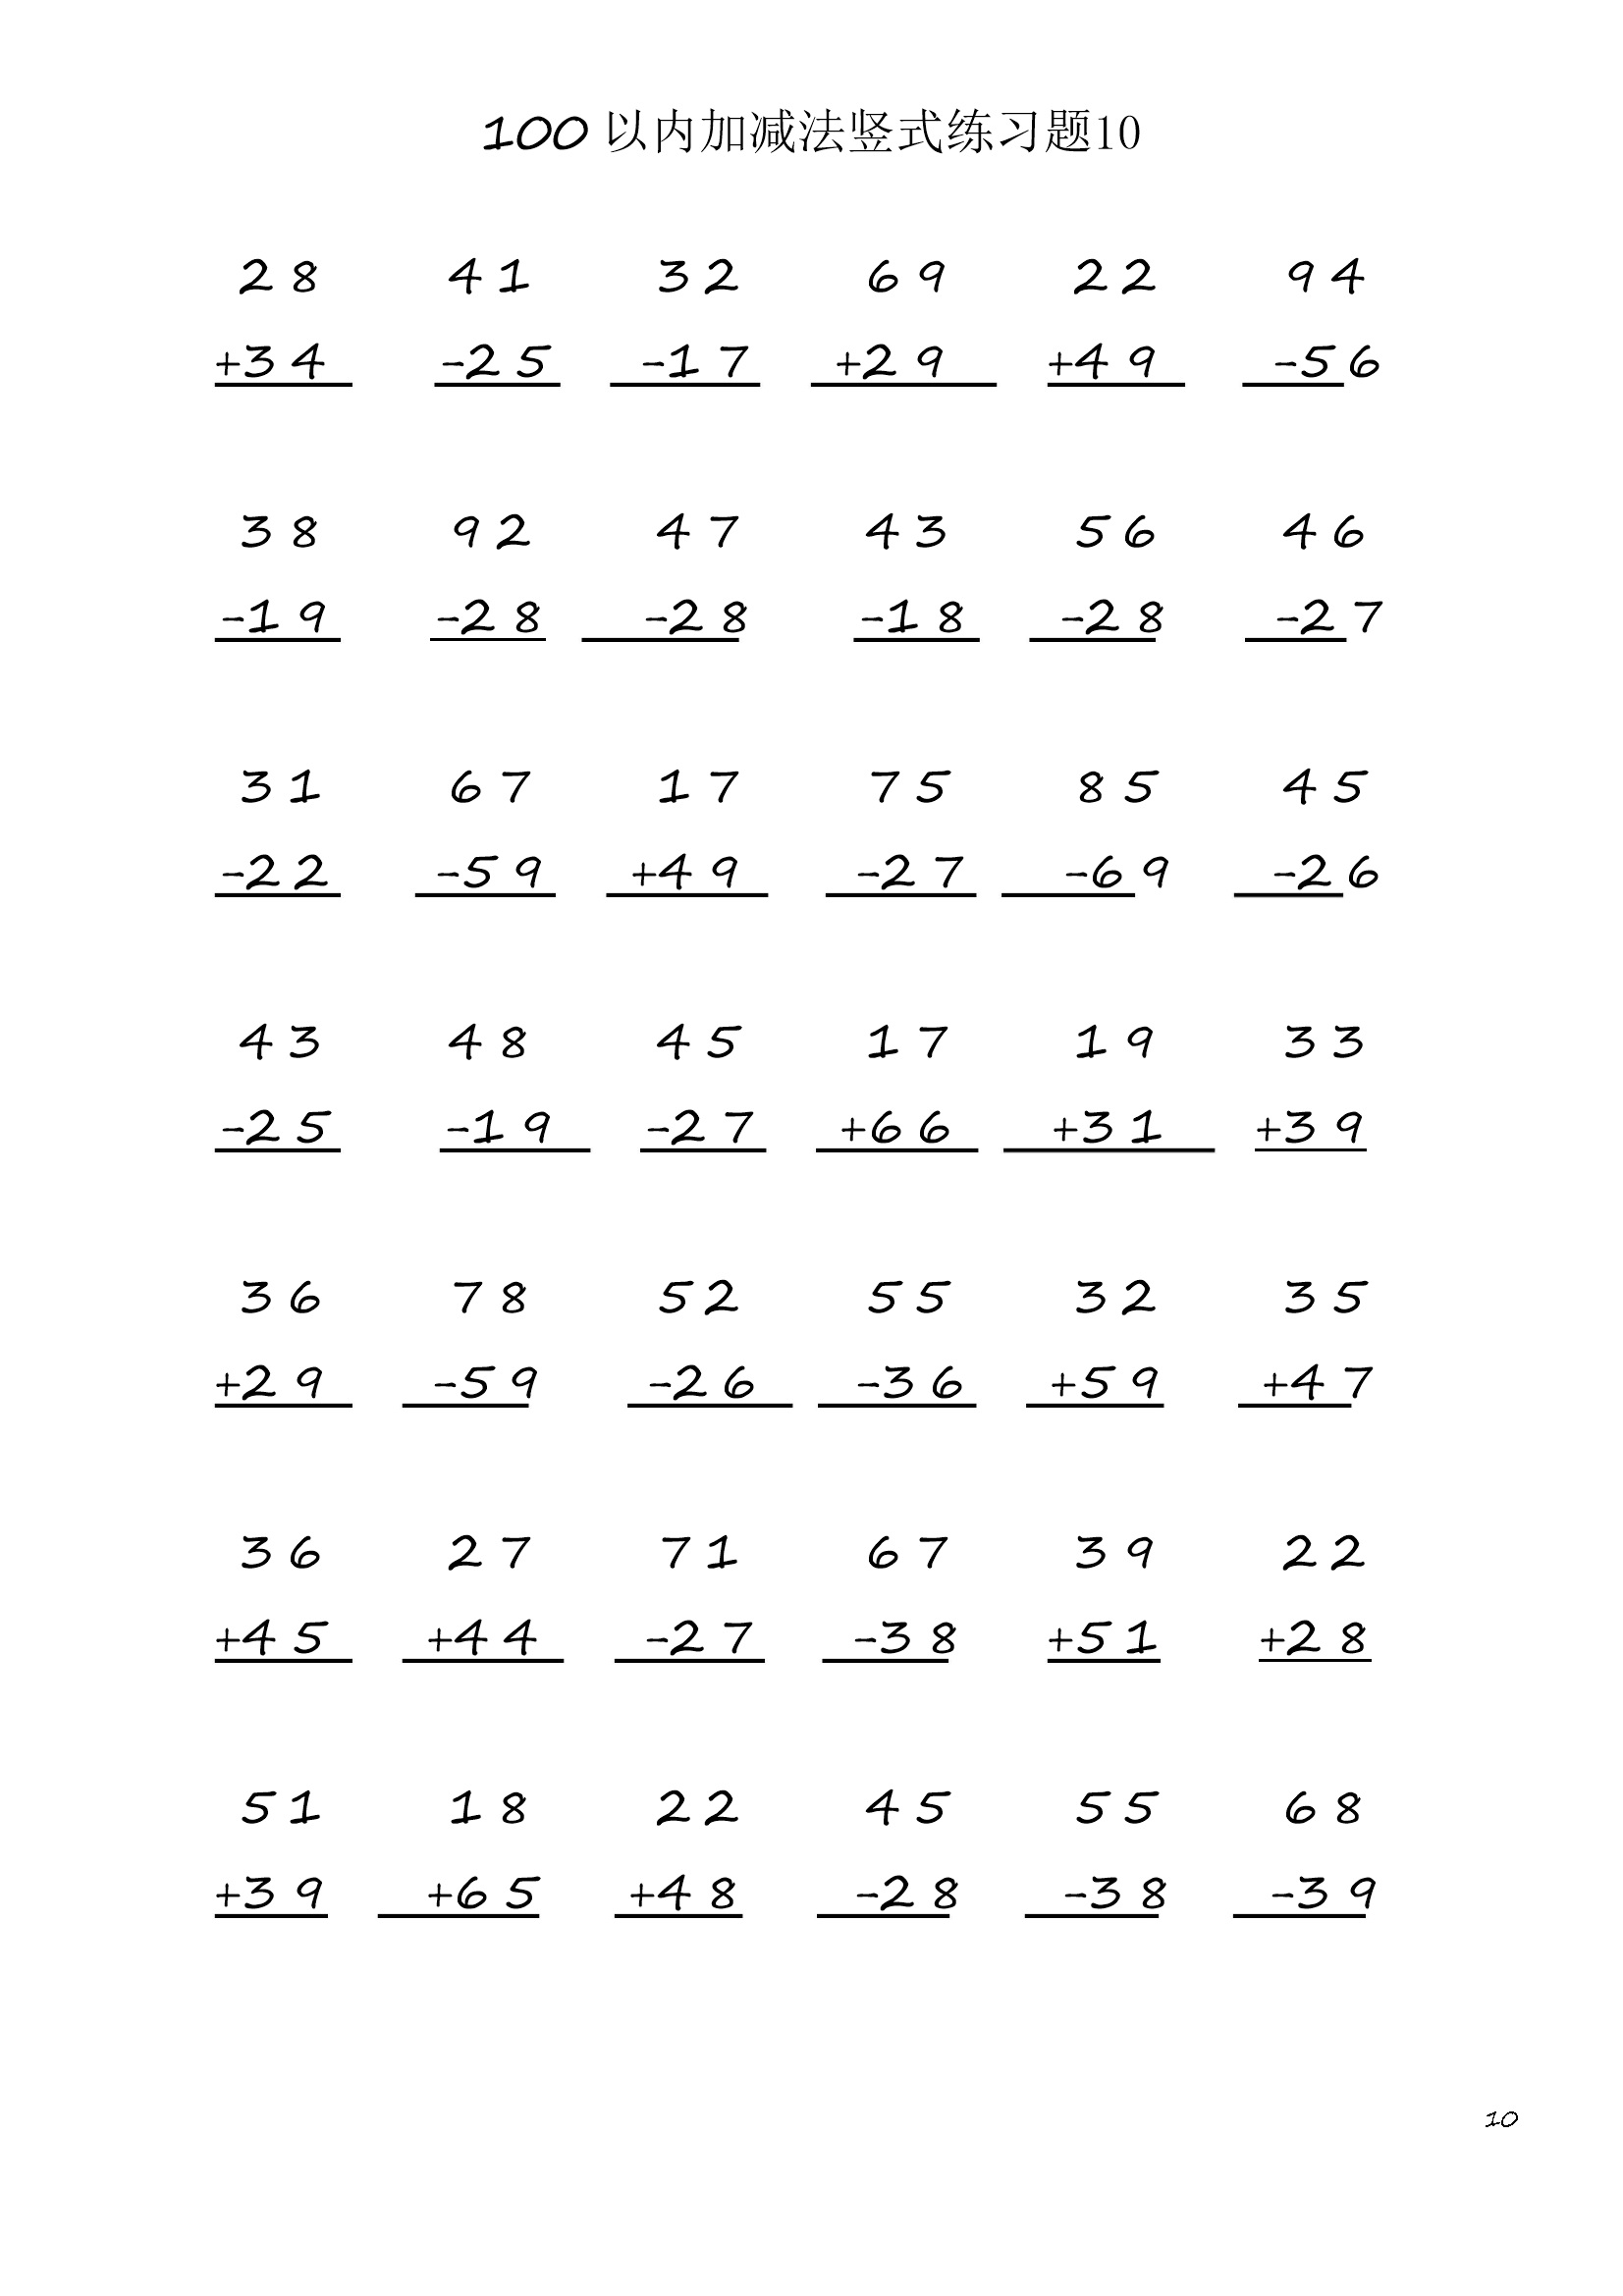 小学数学二年级上册100 以内加减法竖式练习题10  (1页42题)